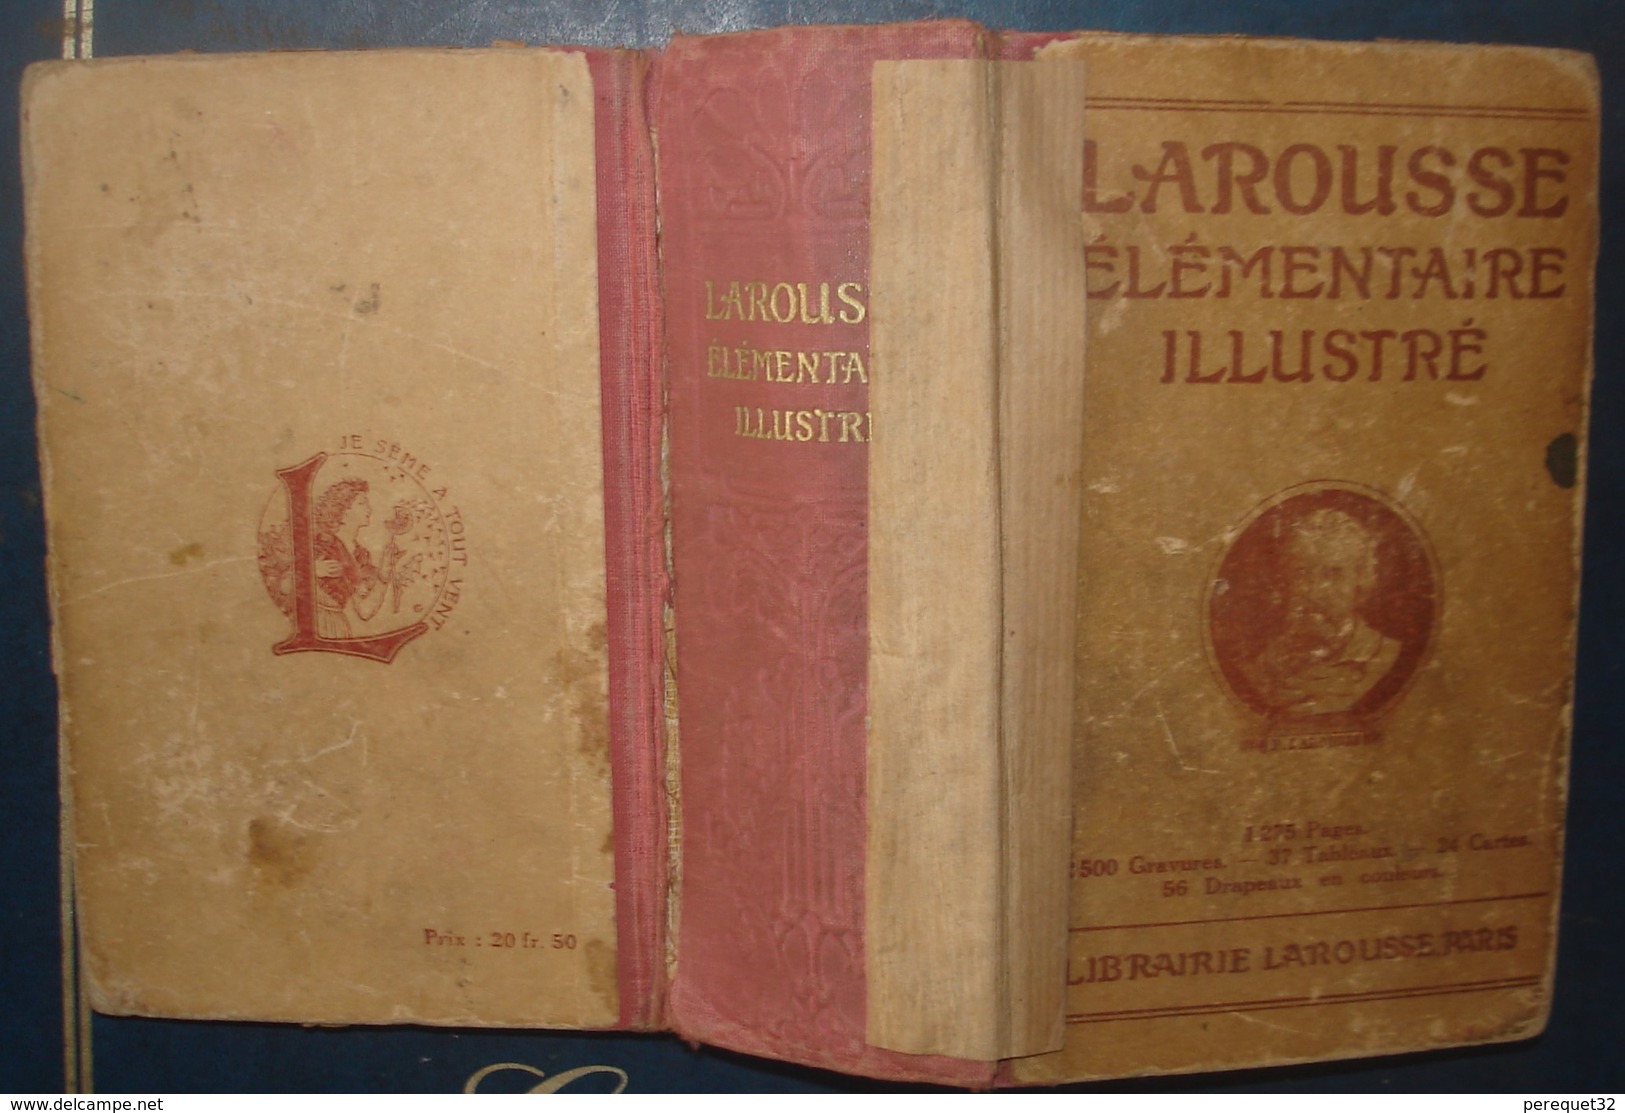 LAROUSSE ELEMENTAIRE ILLUSTRE.1932.1275 Pages - Dictionnaires